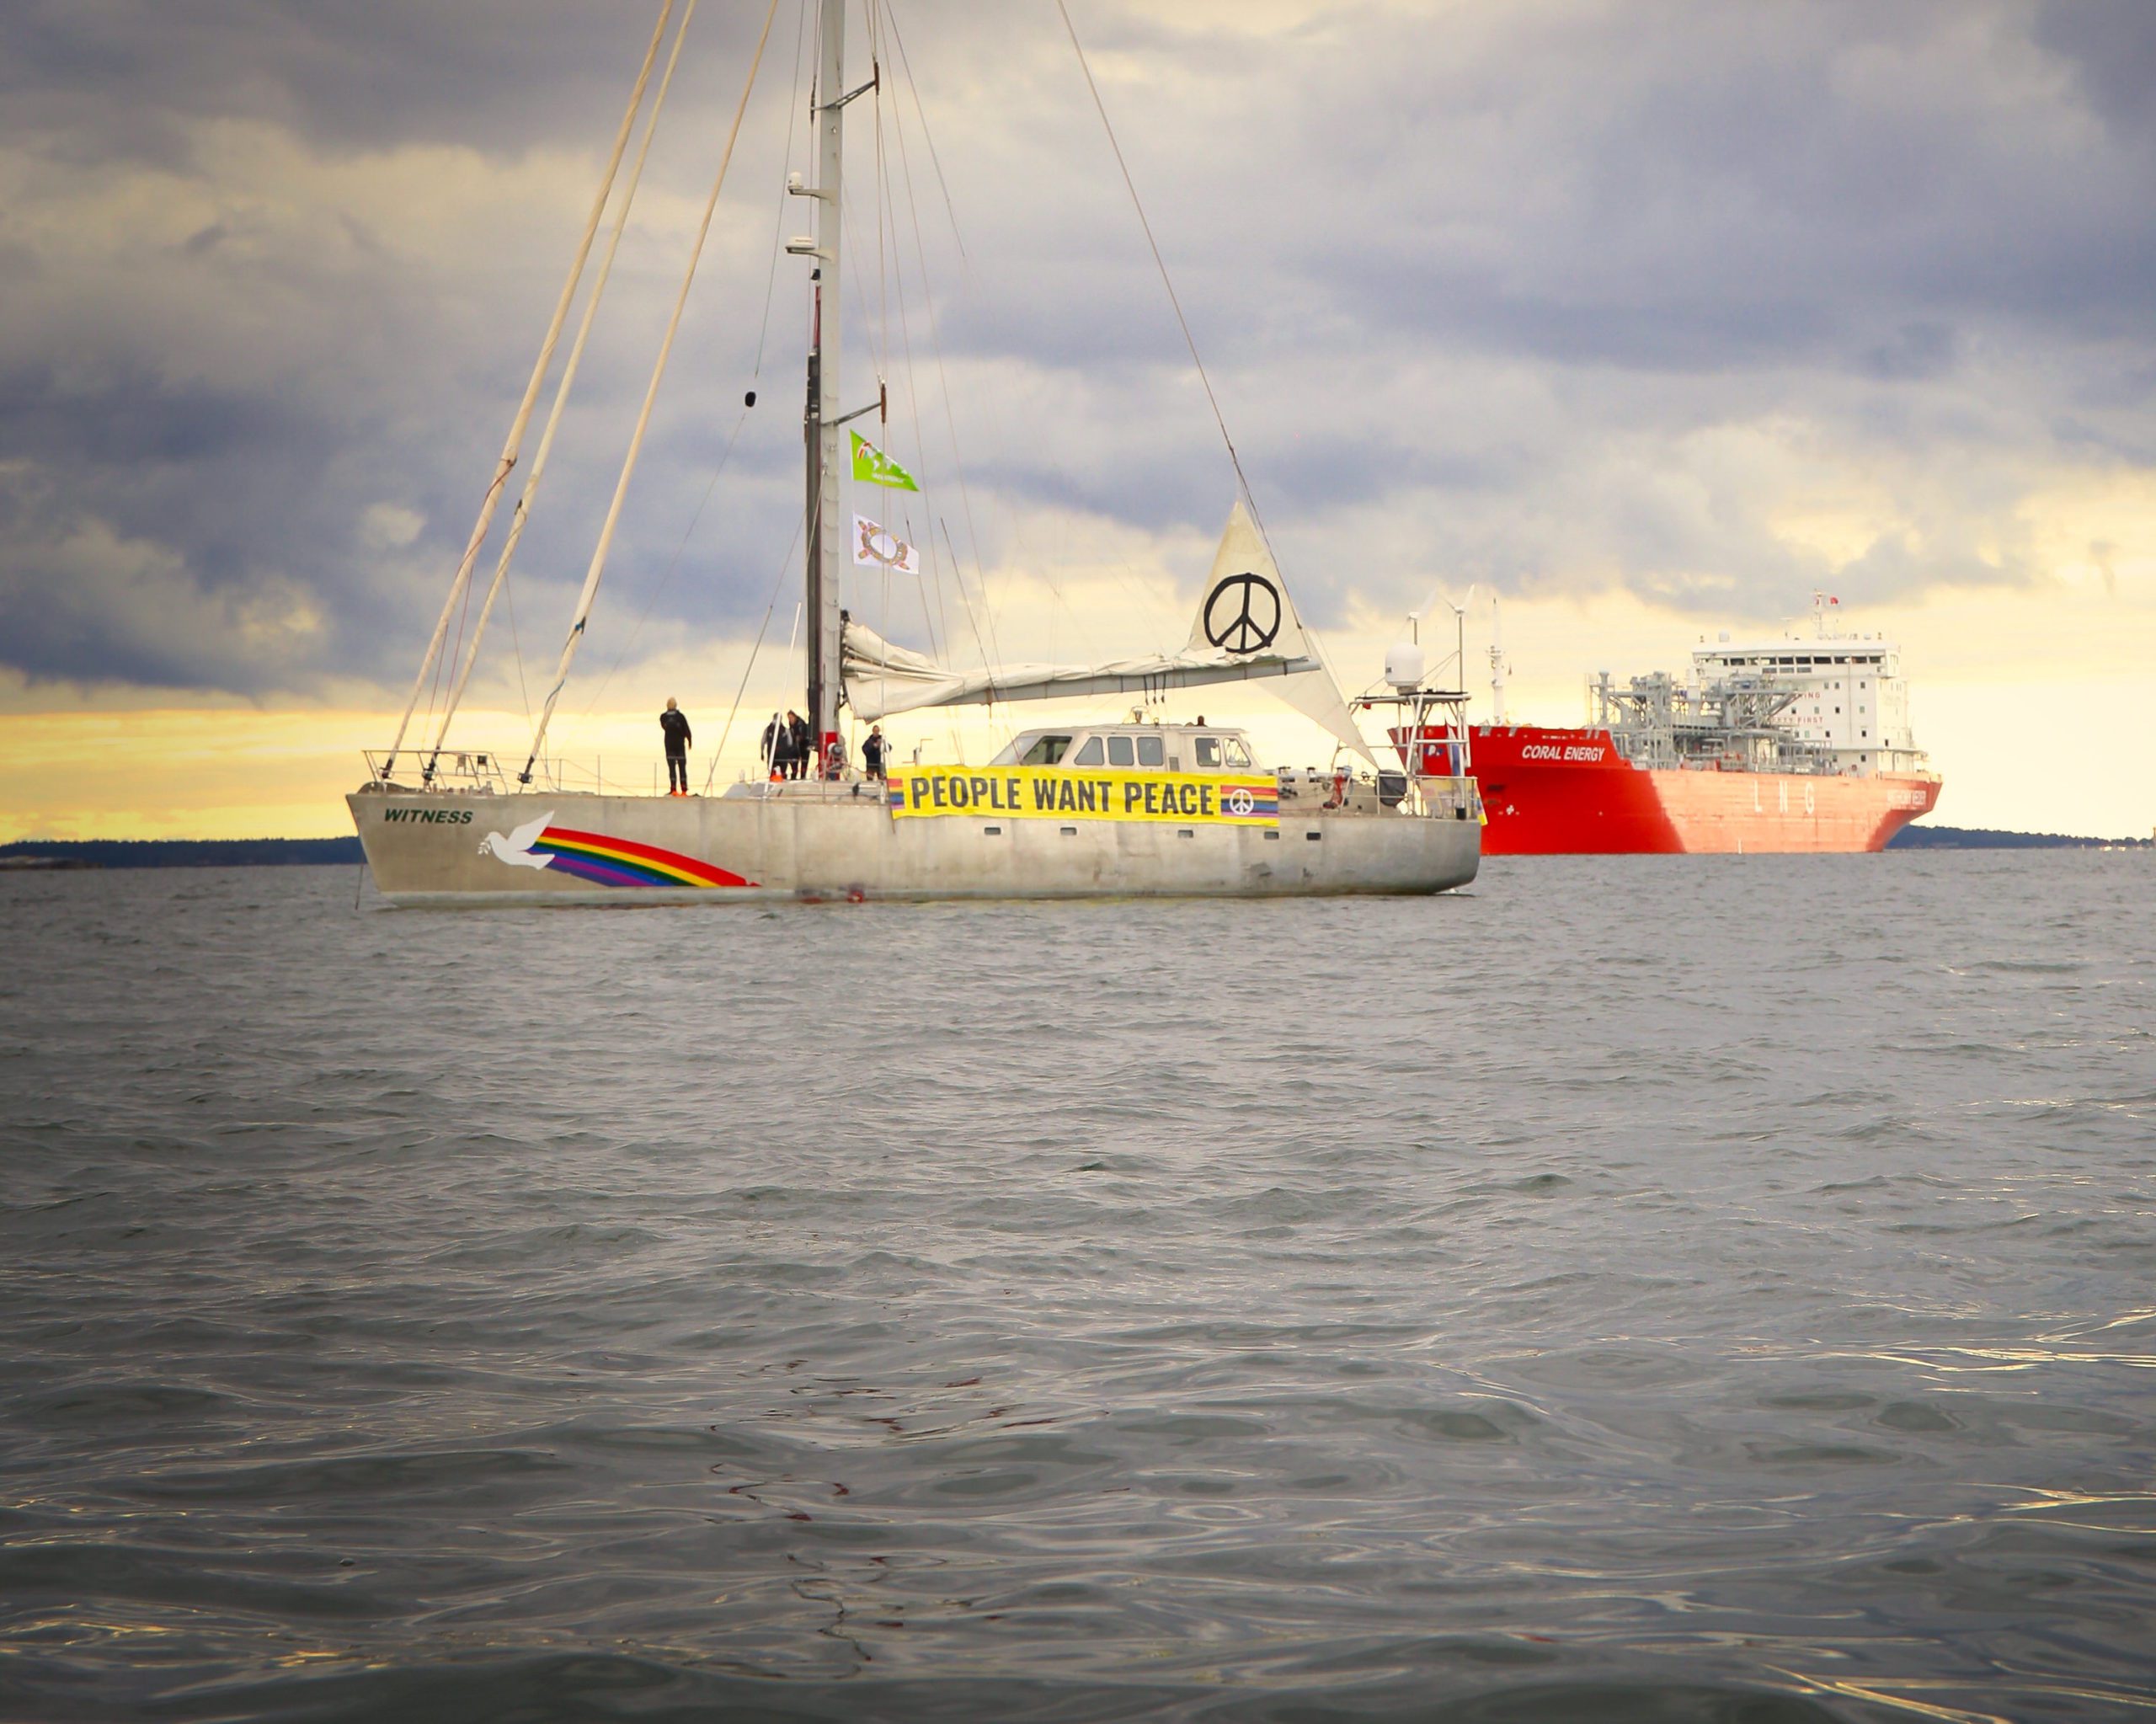 Greenpeace Sailboat blocking LNG tanker